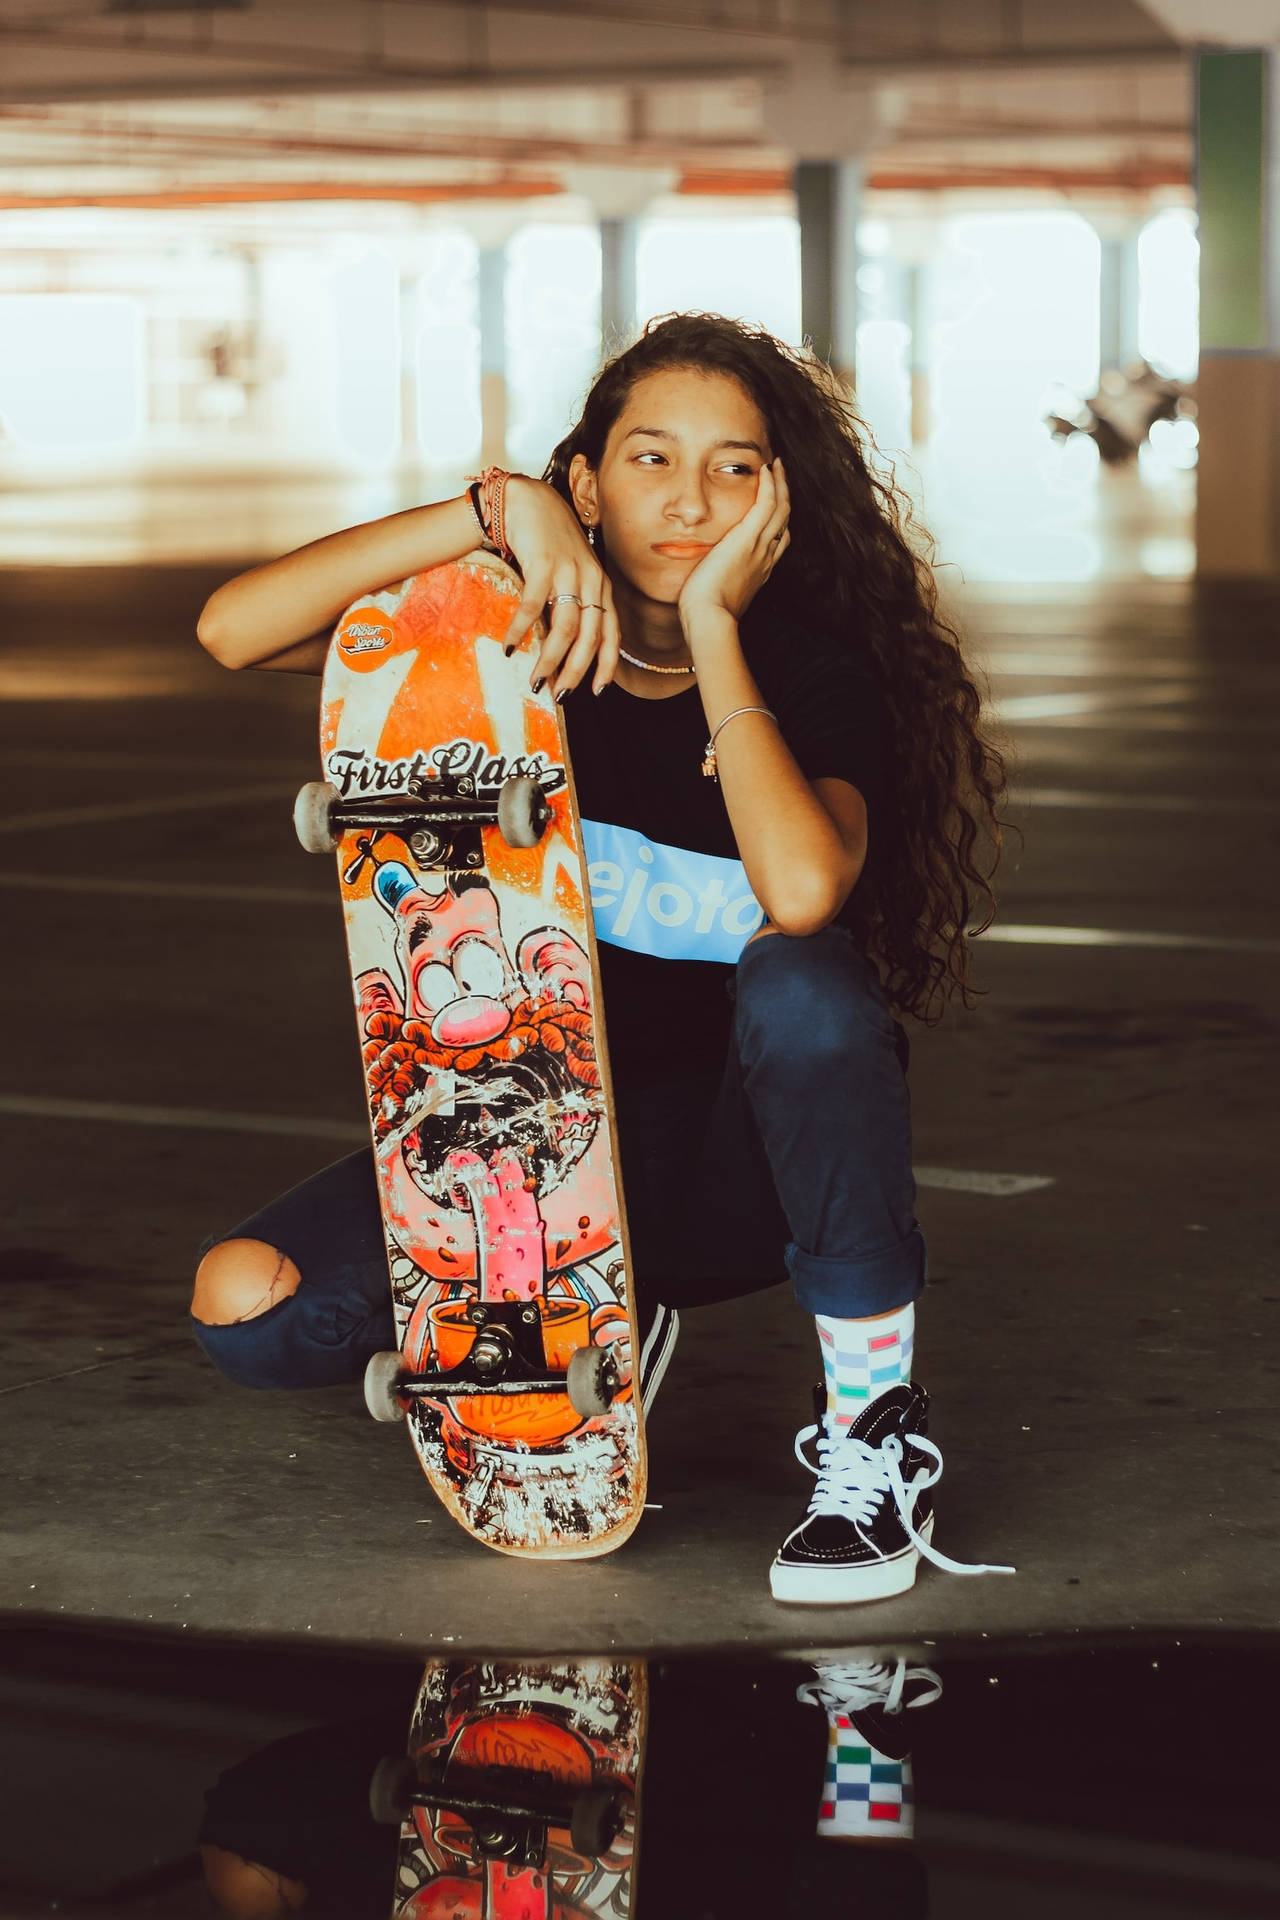 girls skateboarding wallpaper